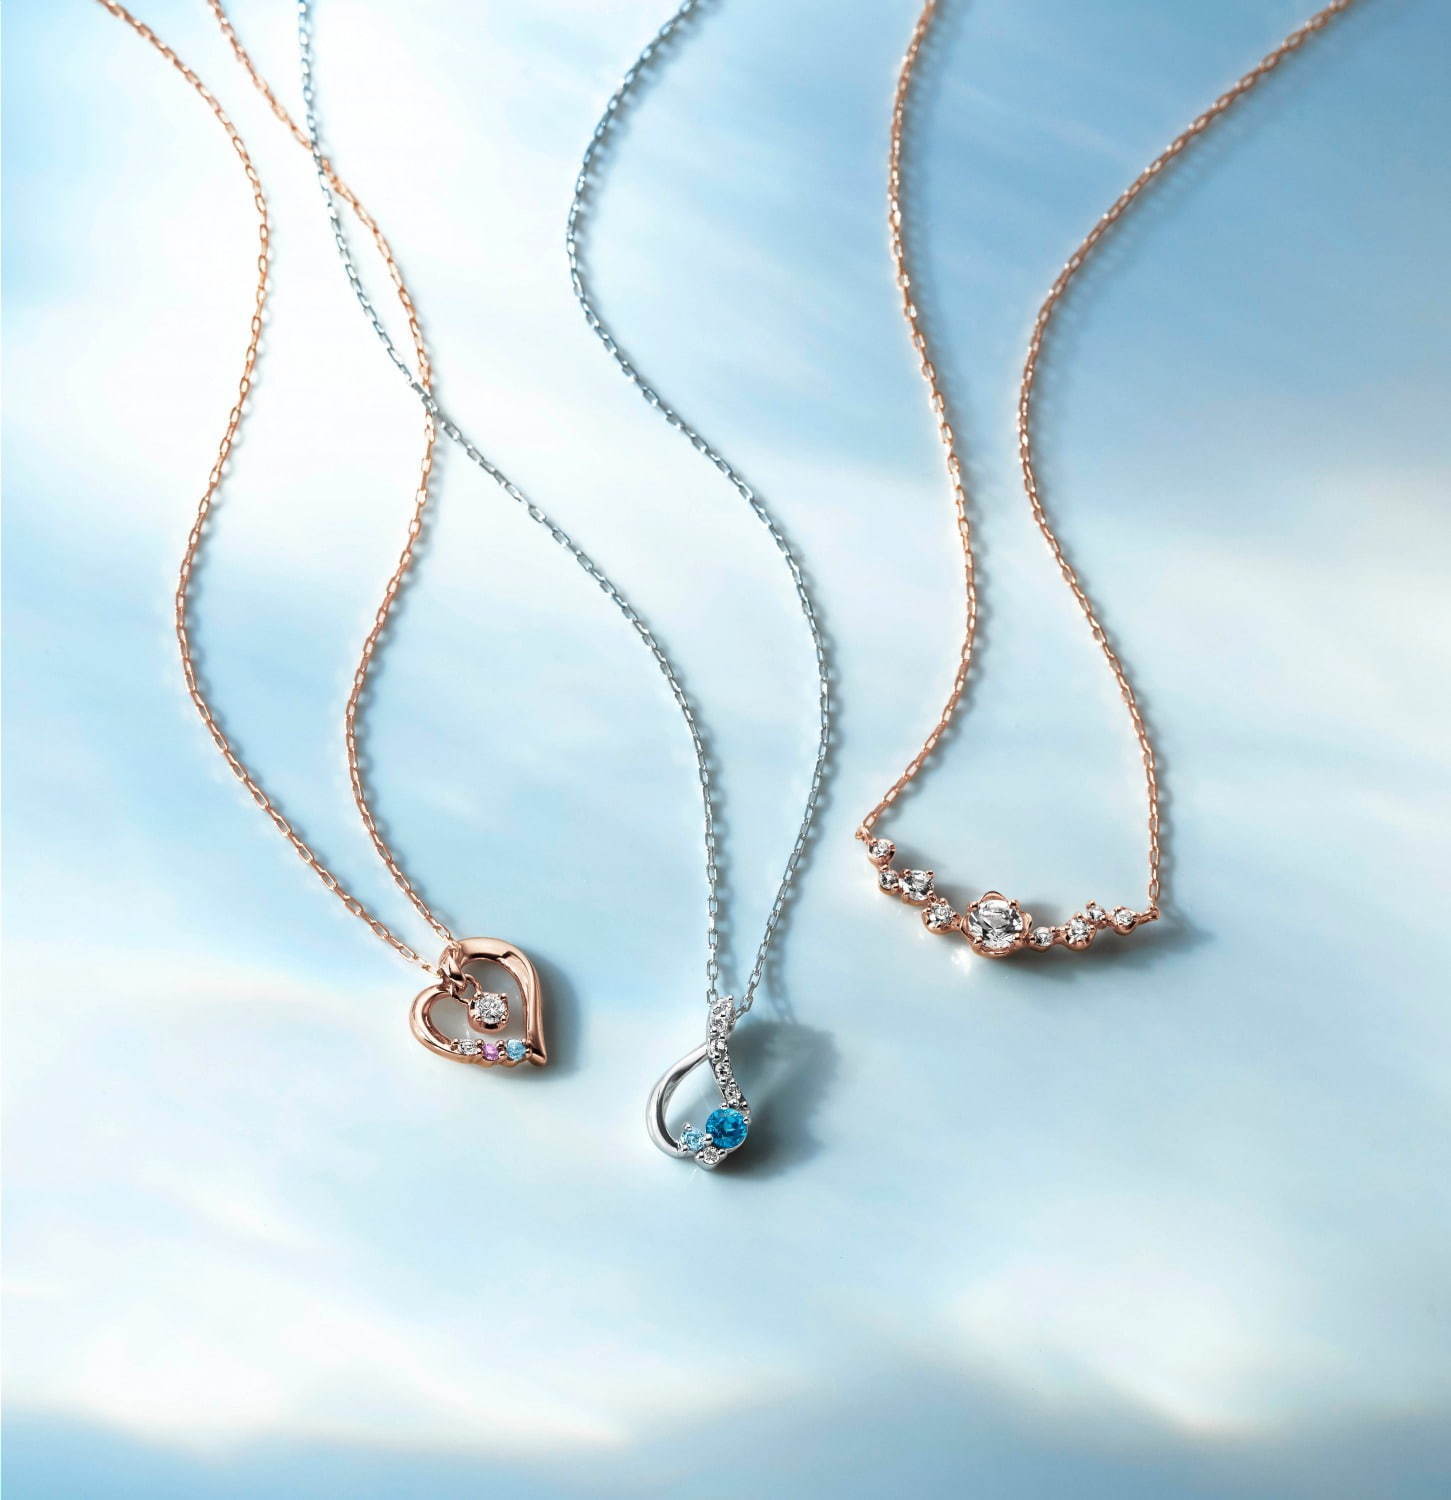 4 の新作ジュエリー 夏の睡蓮やあじさいをイメージしたネックレス ダイヤモンドや天然石を使用 ファッションプレス